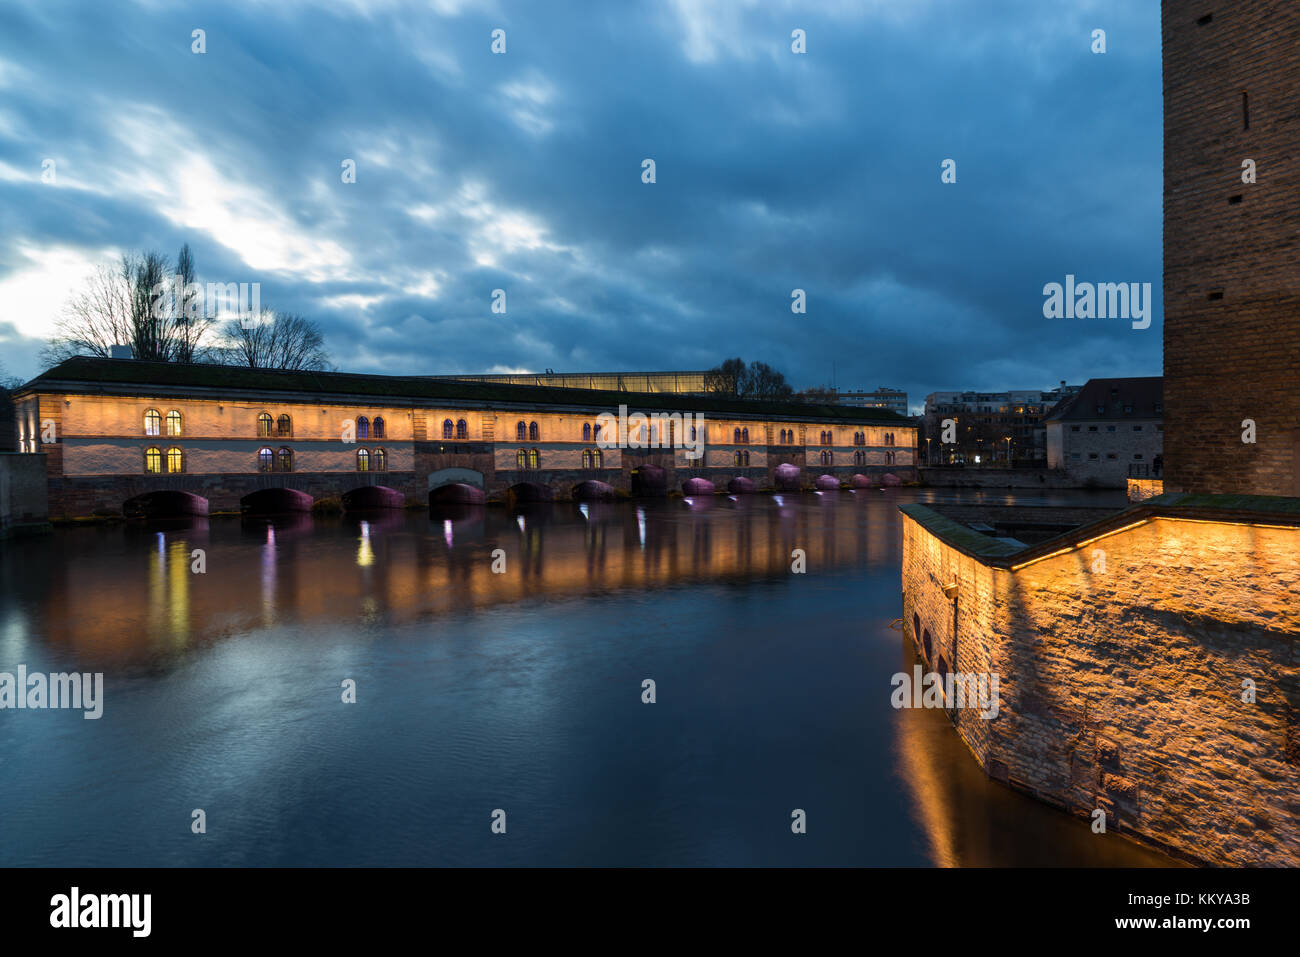 Pont médiéval Ponts Couverts depuis le Barrage Vauban à Strasbourg, France Banque D'Images